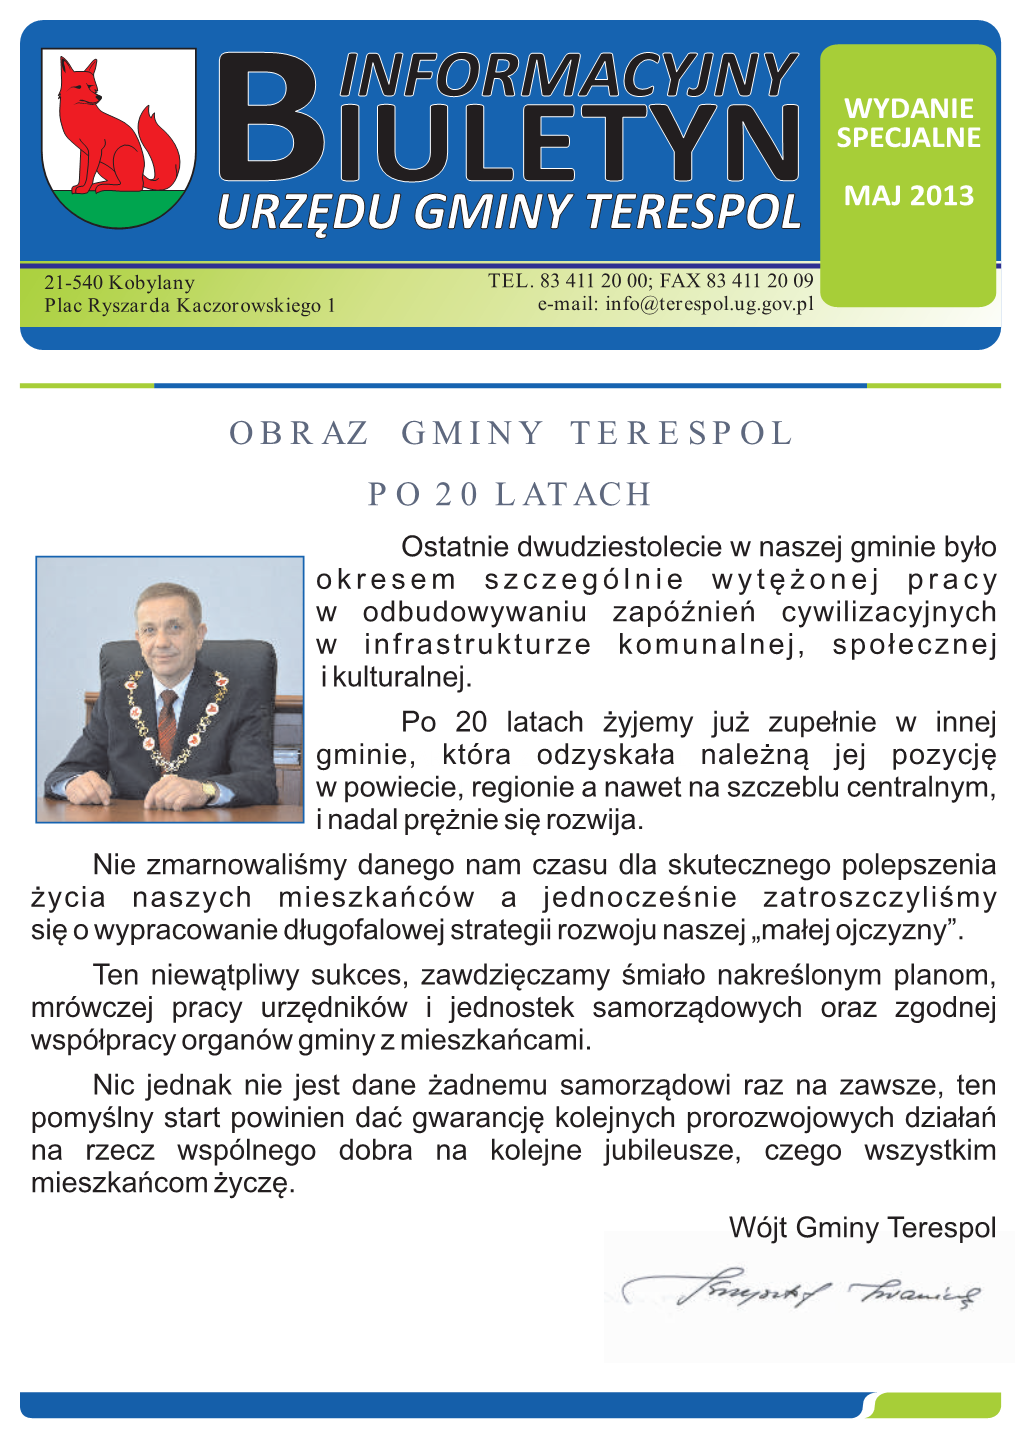 Informacyjny Wydanie Specjalne Biuletyn Maj 2013 Urzędu Gminy Terespol